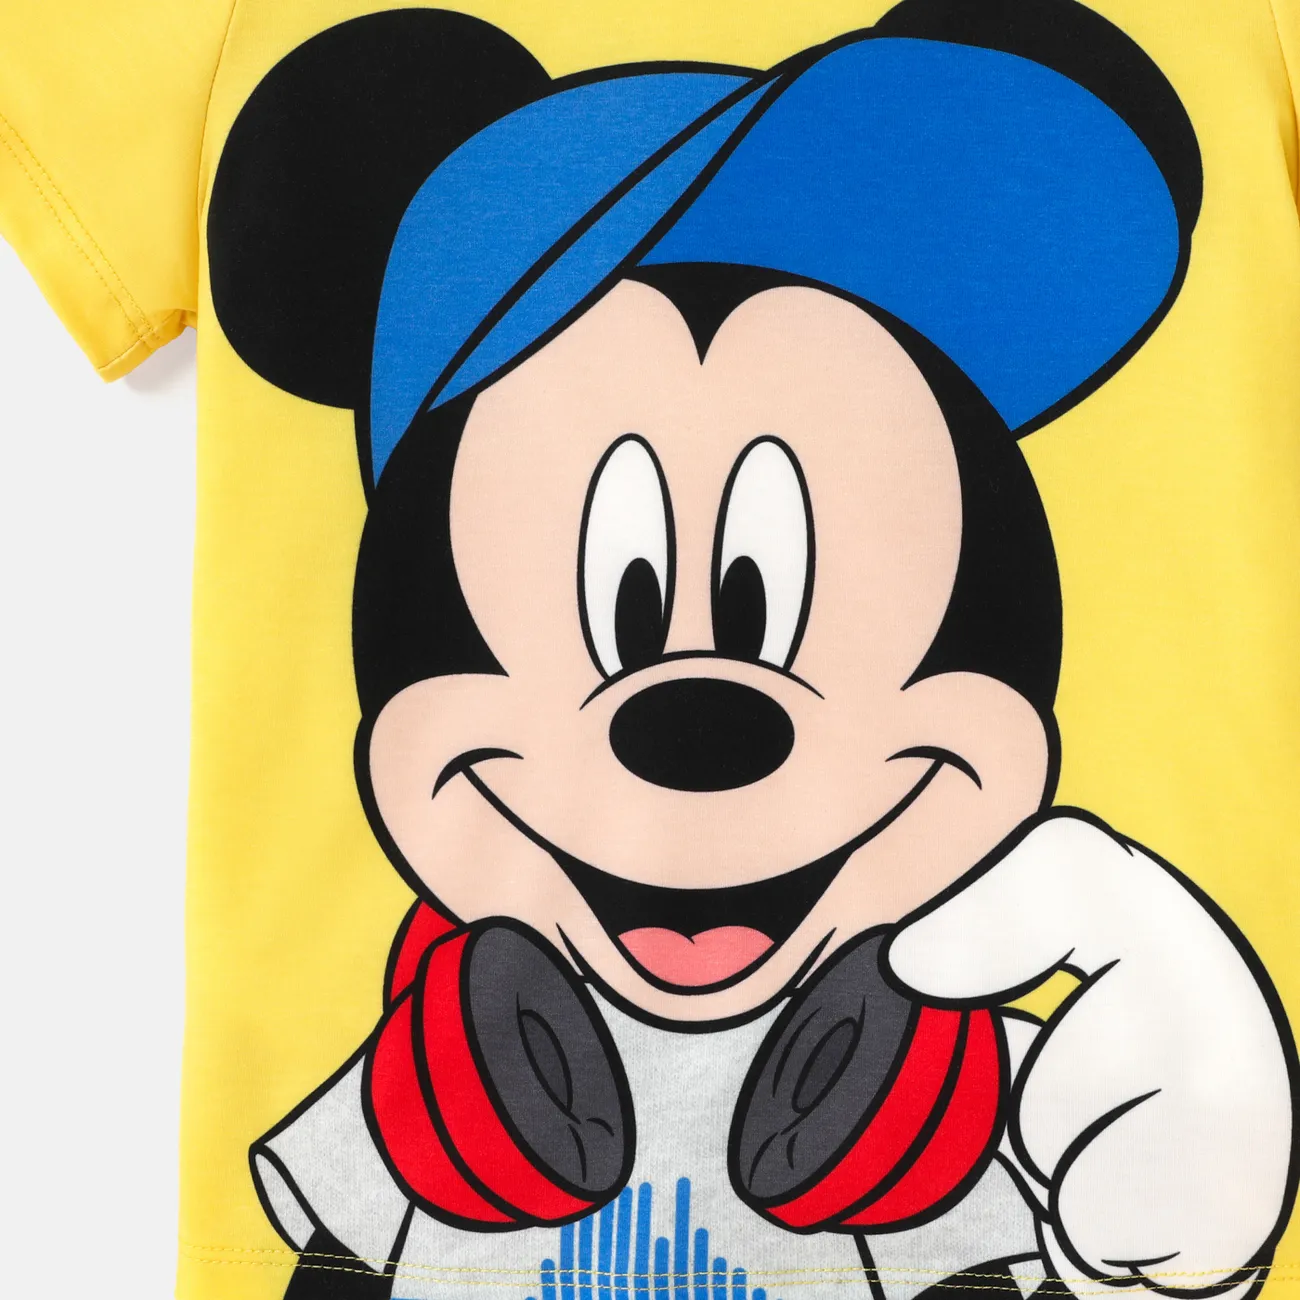 Disney Toddler/Kid Girl/Boy Character Print Naia™ Short-sleeve Tee Amarillo big image 1